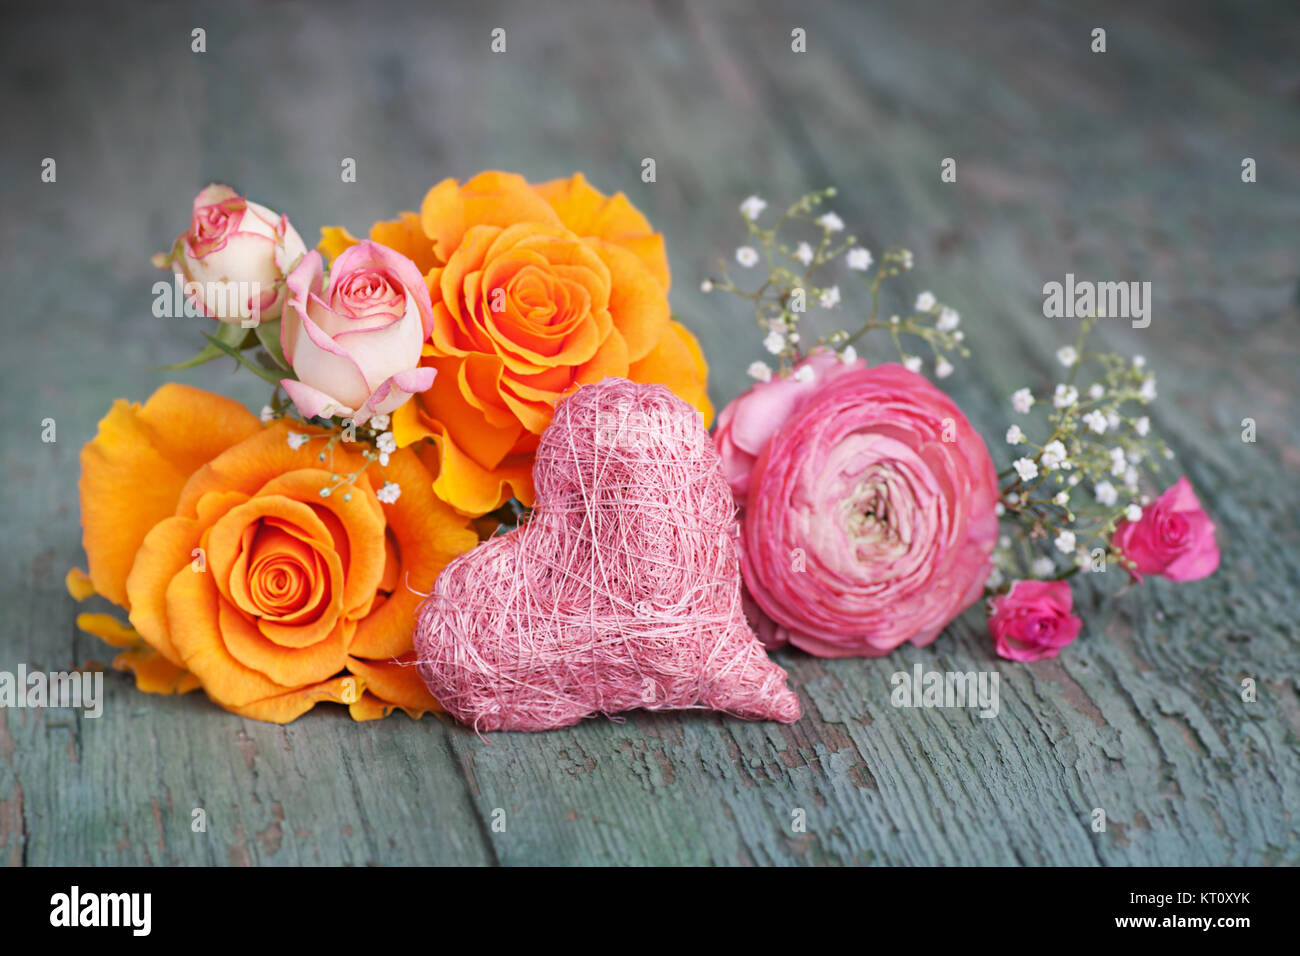 La vie avec des roses colorées stil sur une vieille table en bois miteux pour une fête des mères, carte de souhaits Banque D'Images